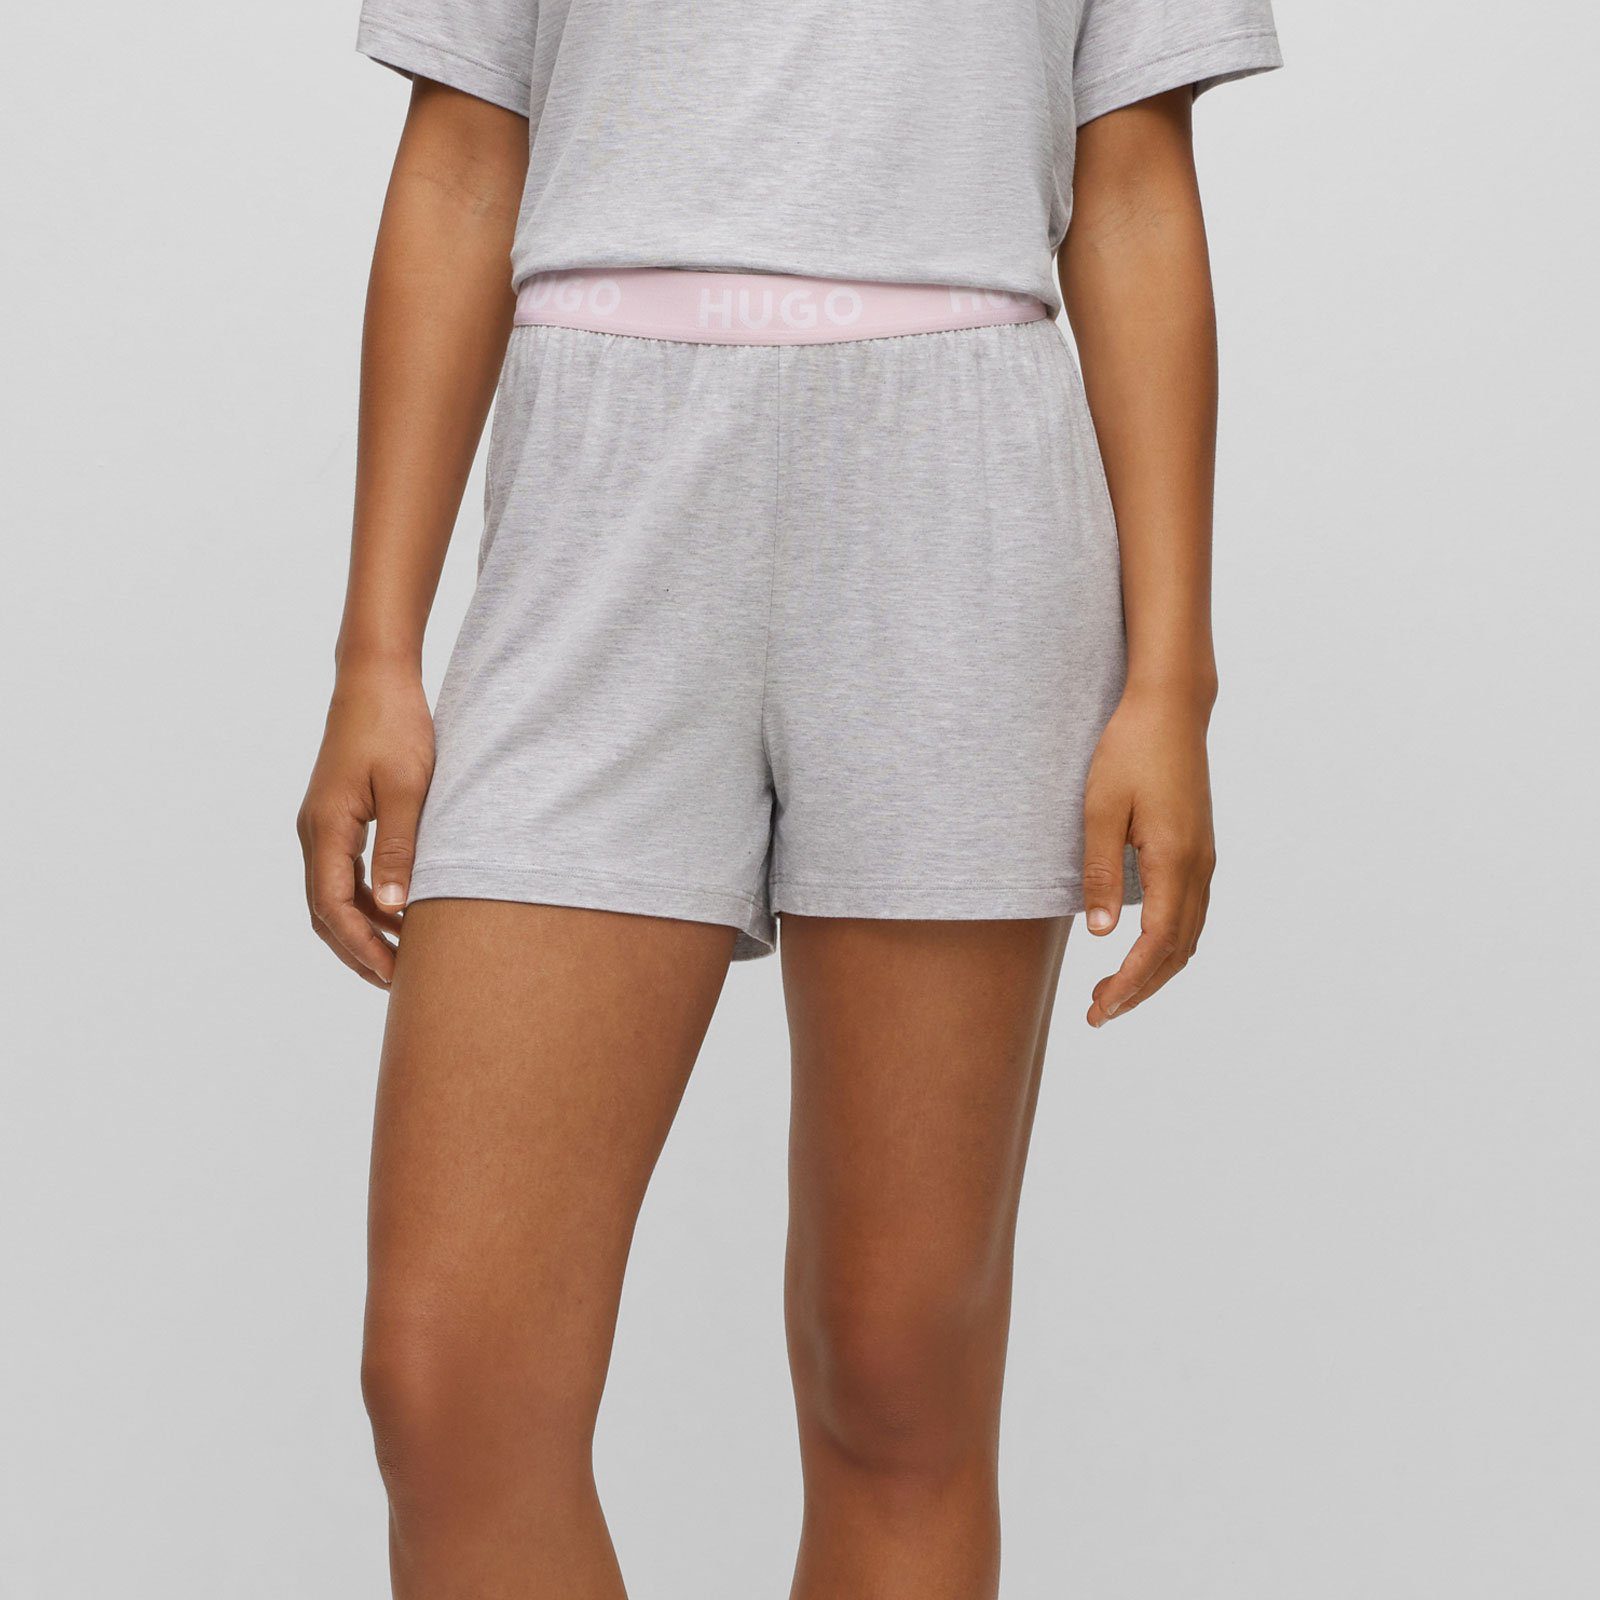 Unite Marken-Logos mit HUGO Shorts sichtbarem Pyjamashorts mit Bund